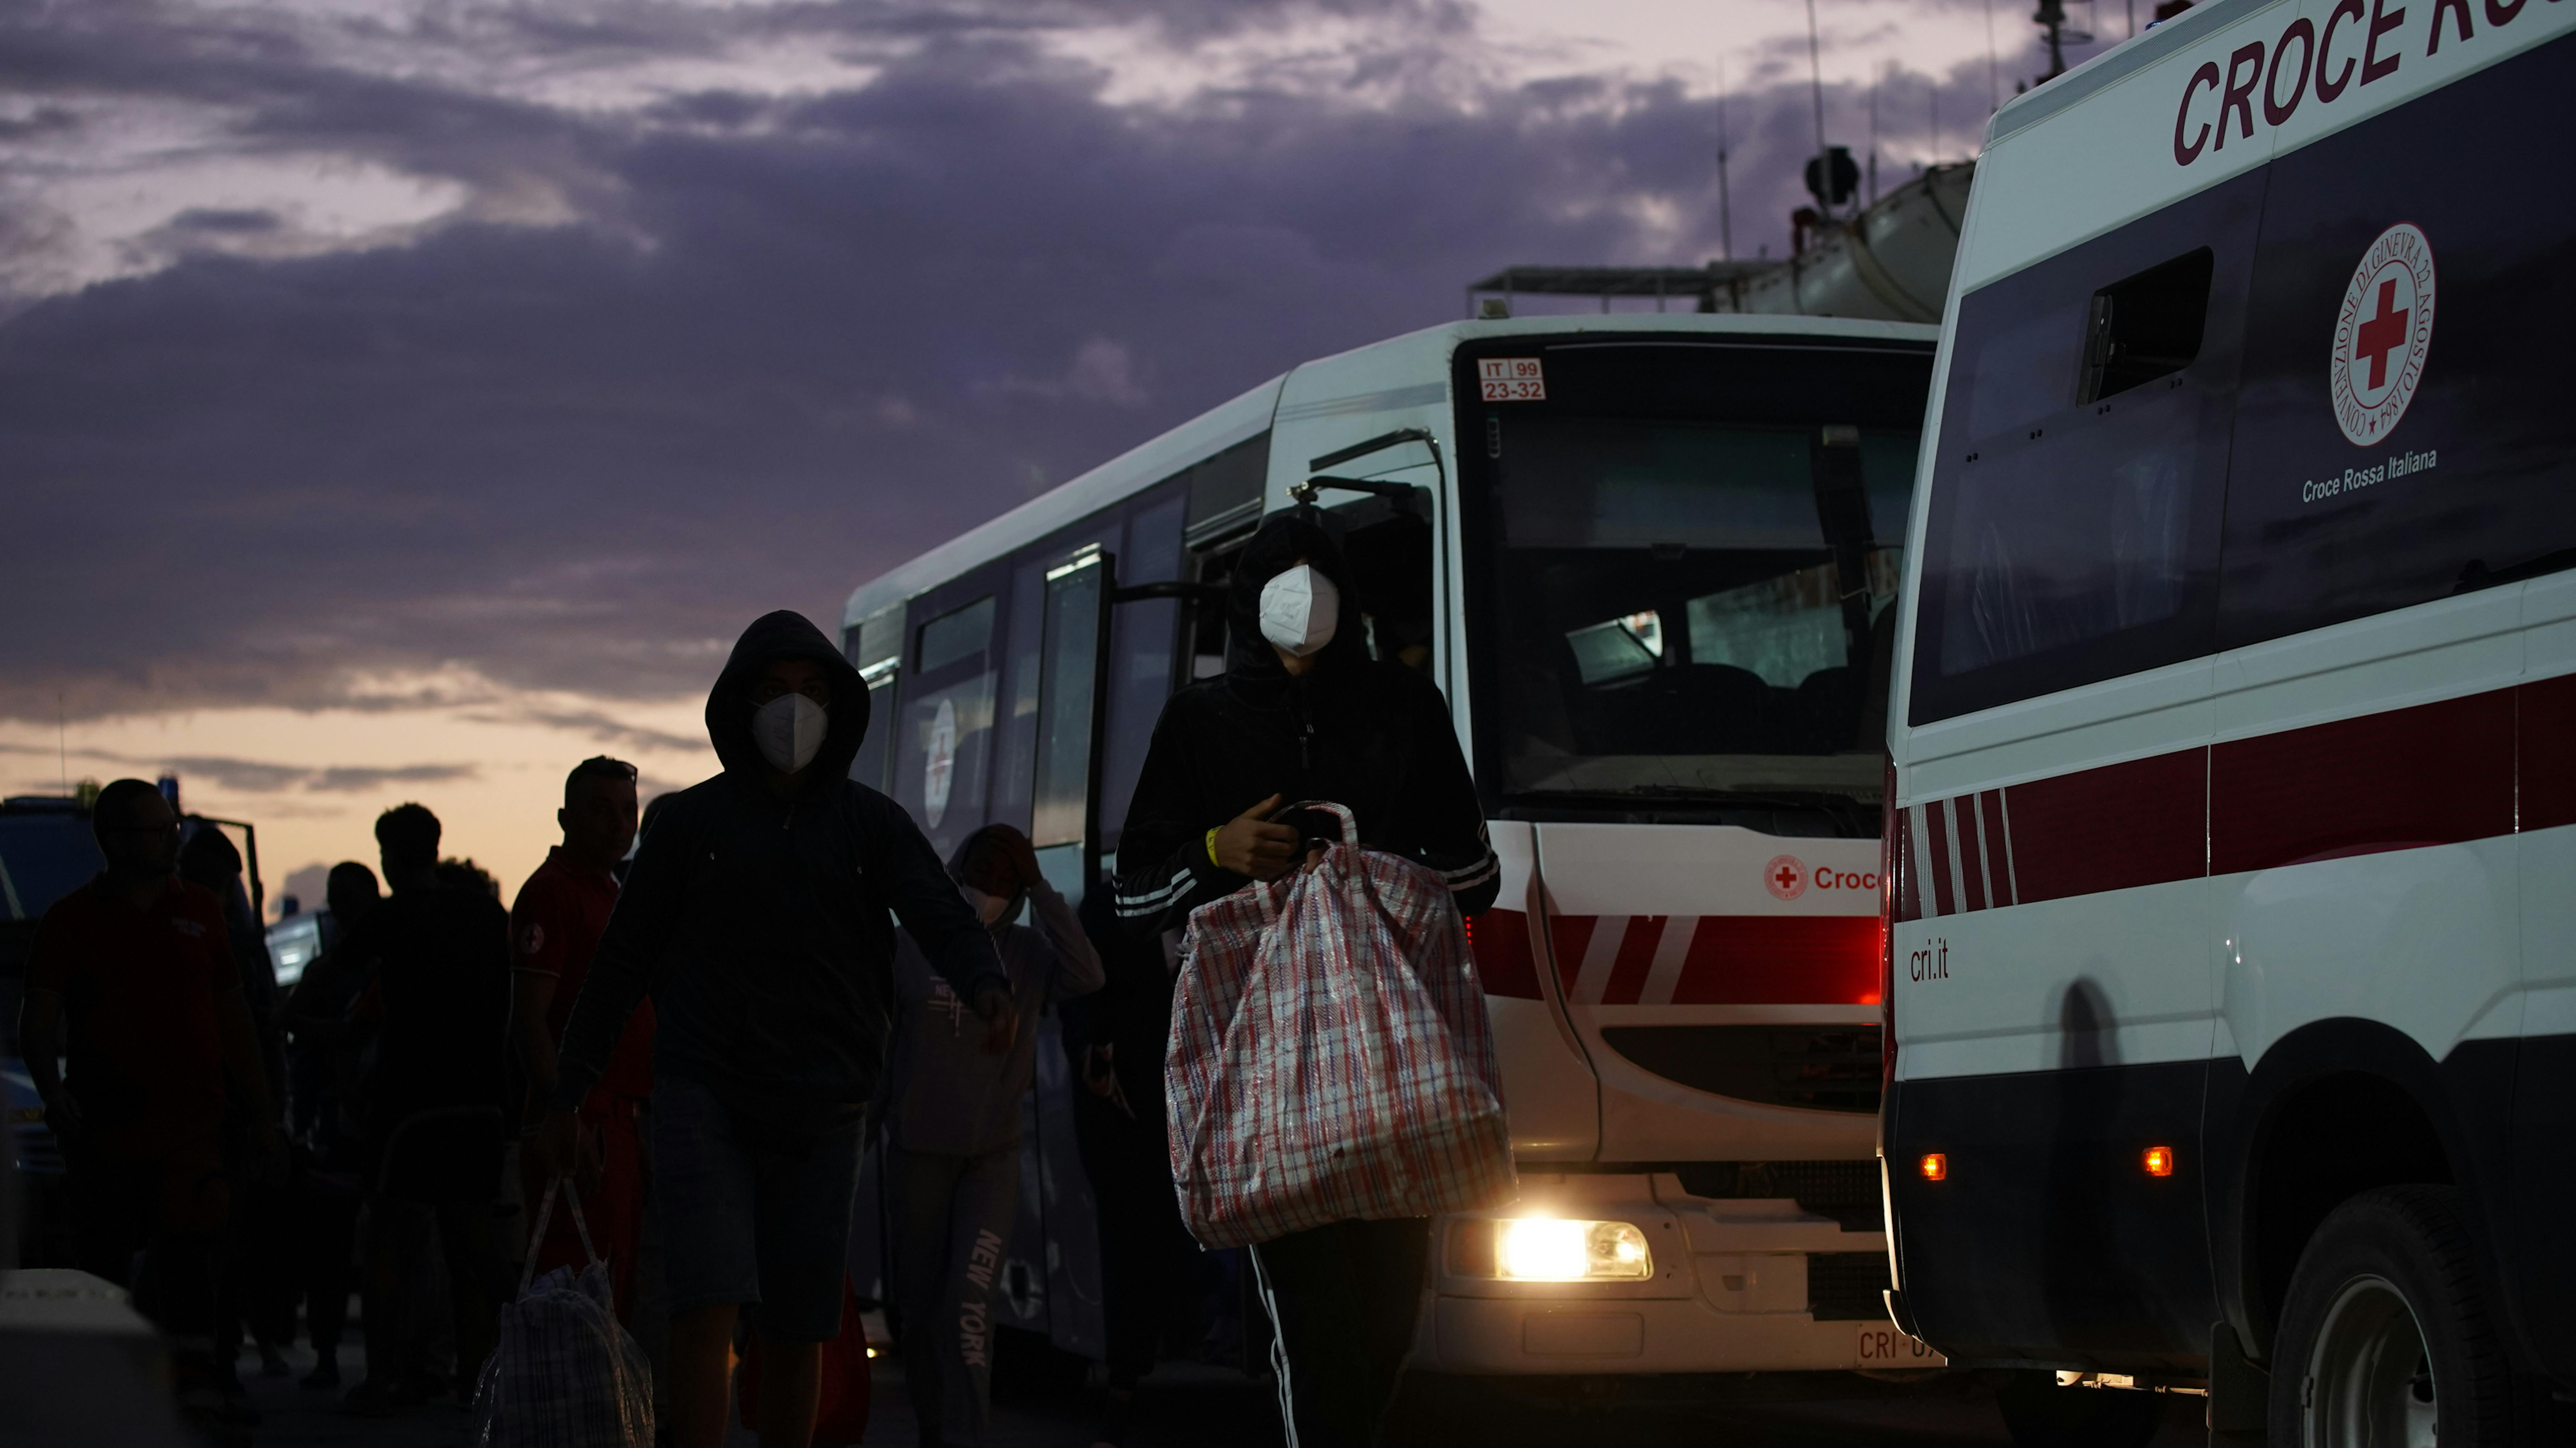 Lampendusa - i bambini e gli adolescenti non accompagnati vengono trasferiti in autobus dal centro di accoglienza “hotspot” dell’isola ad altre strutture di accoglienza.